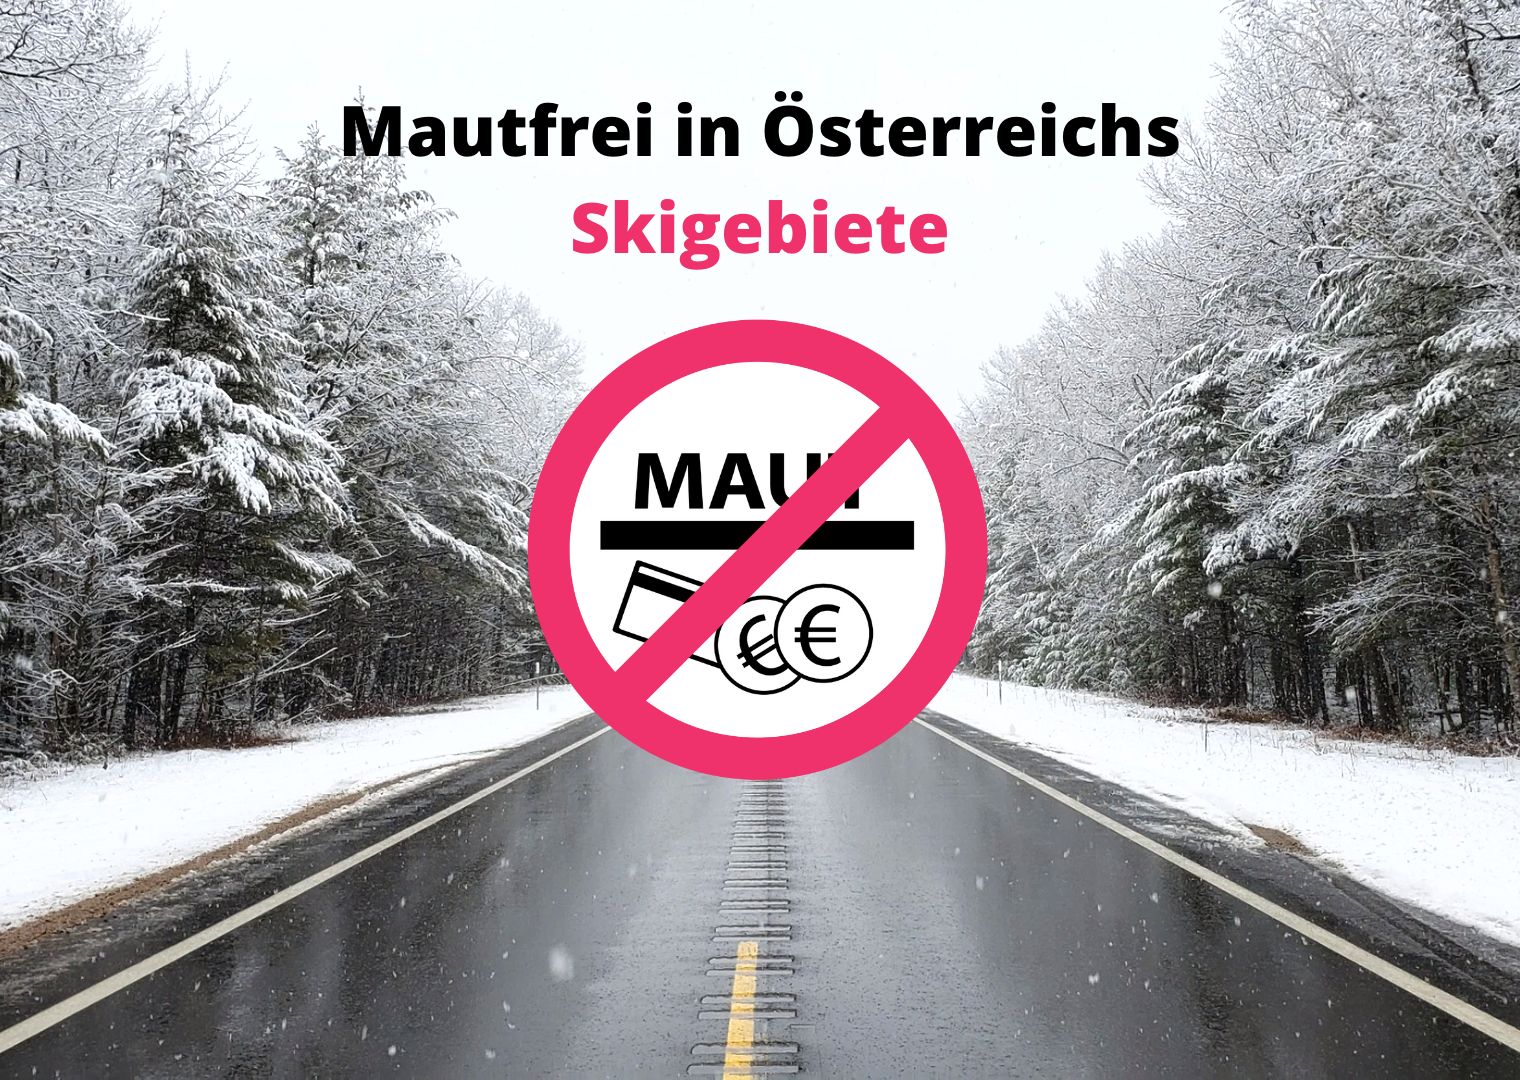 Skigebiete_Mautfrei_O-sterreich